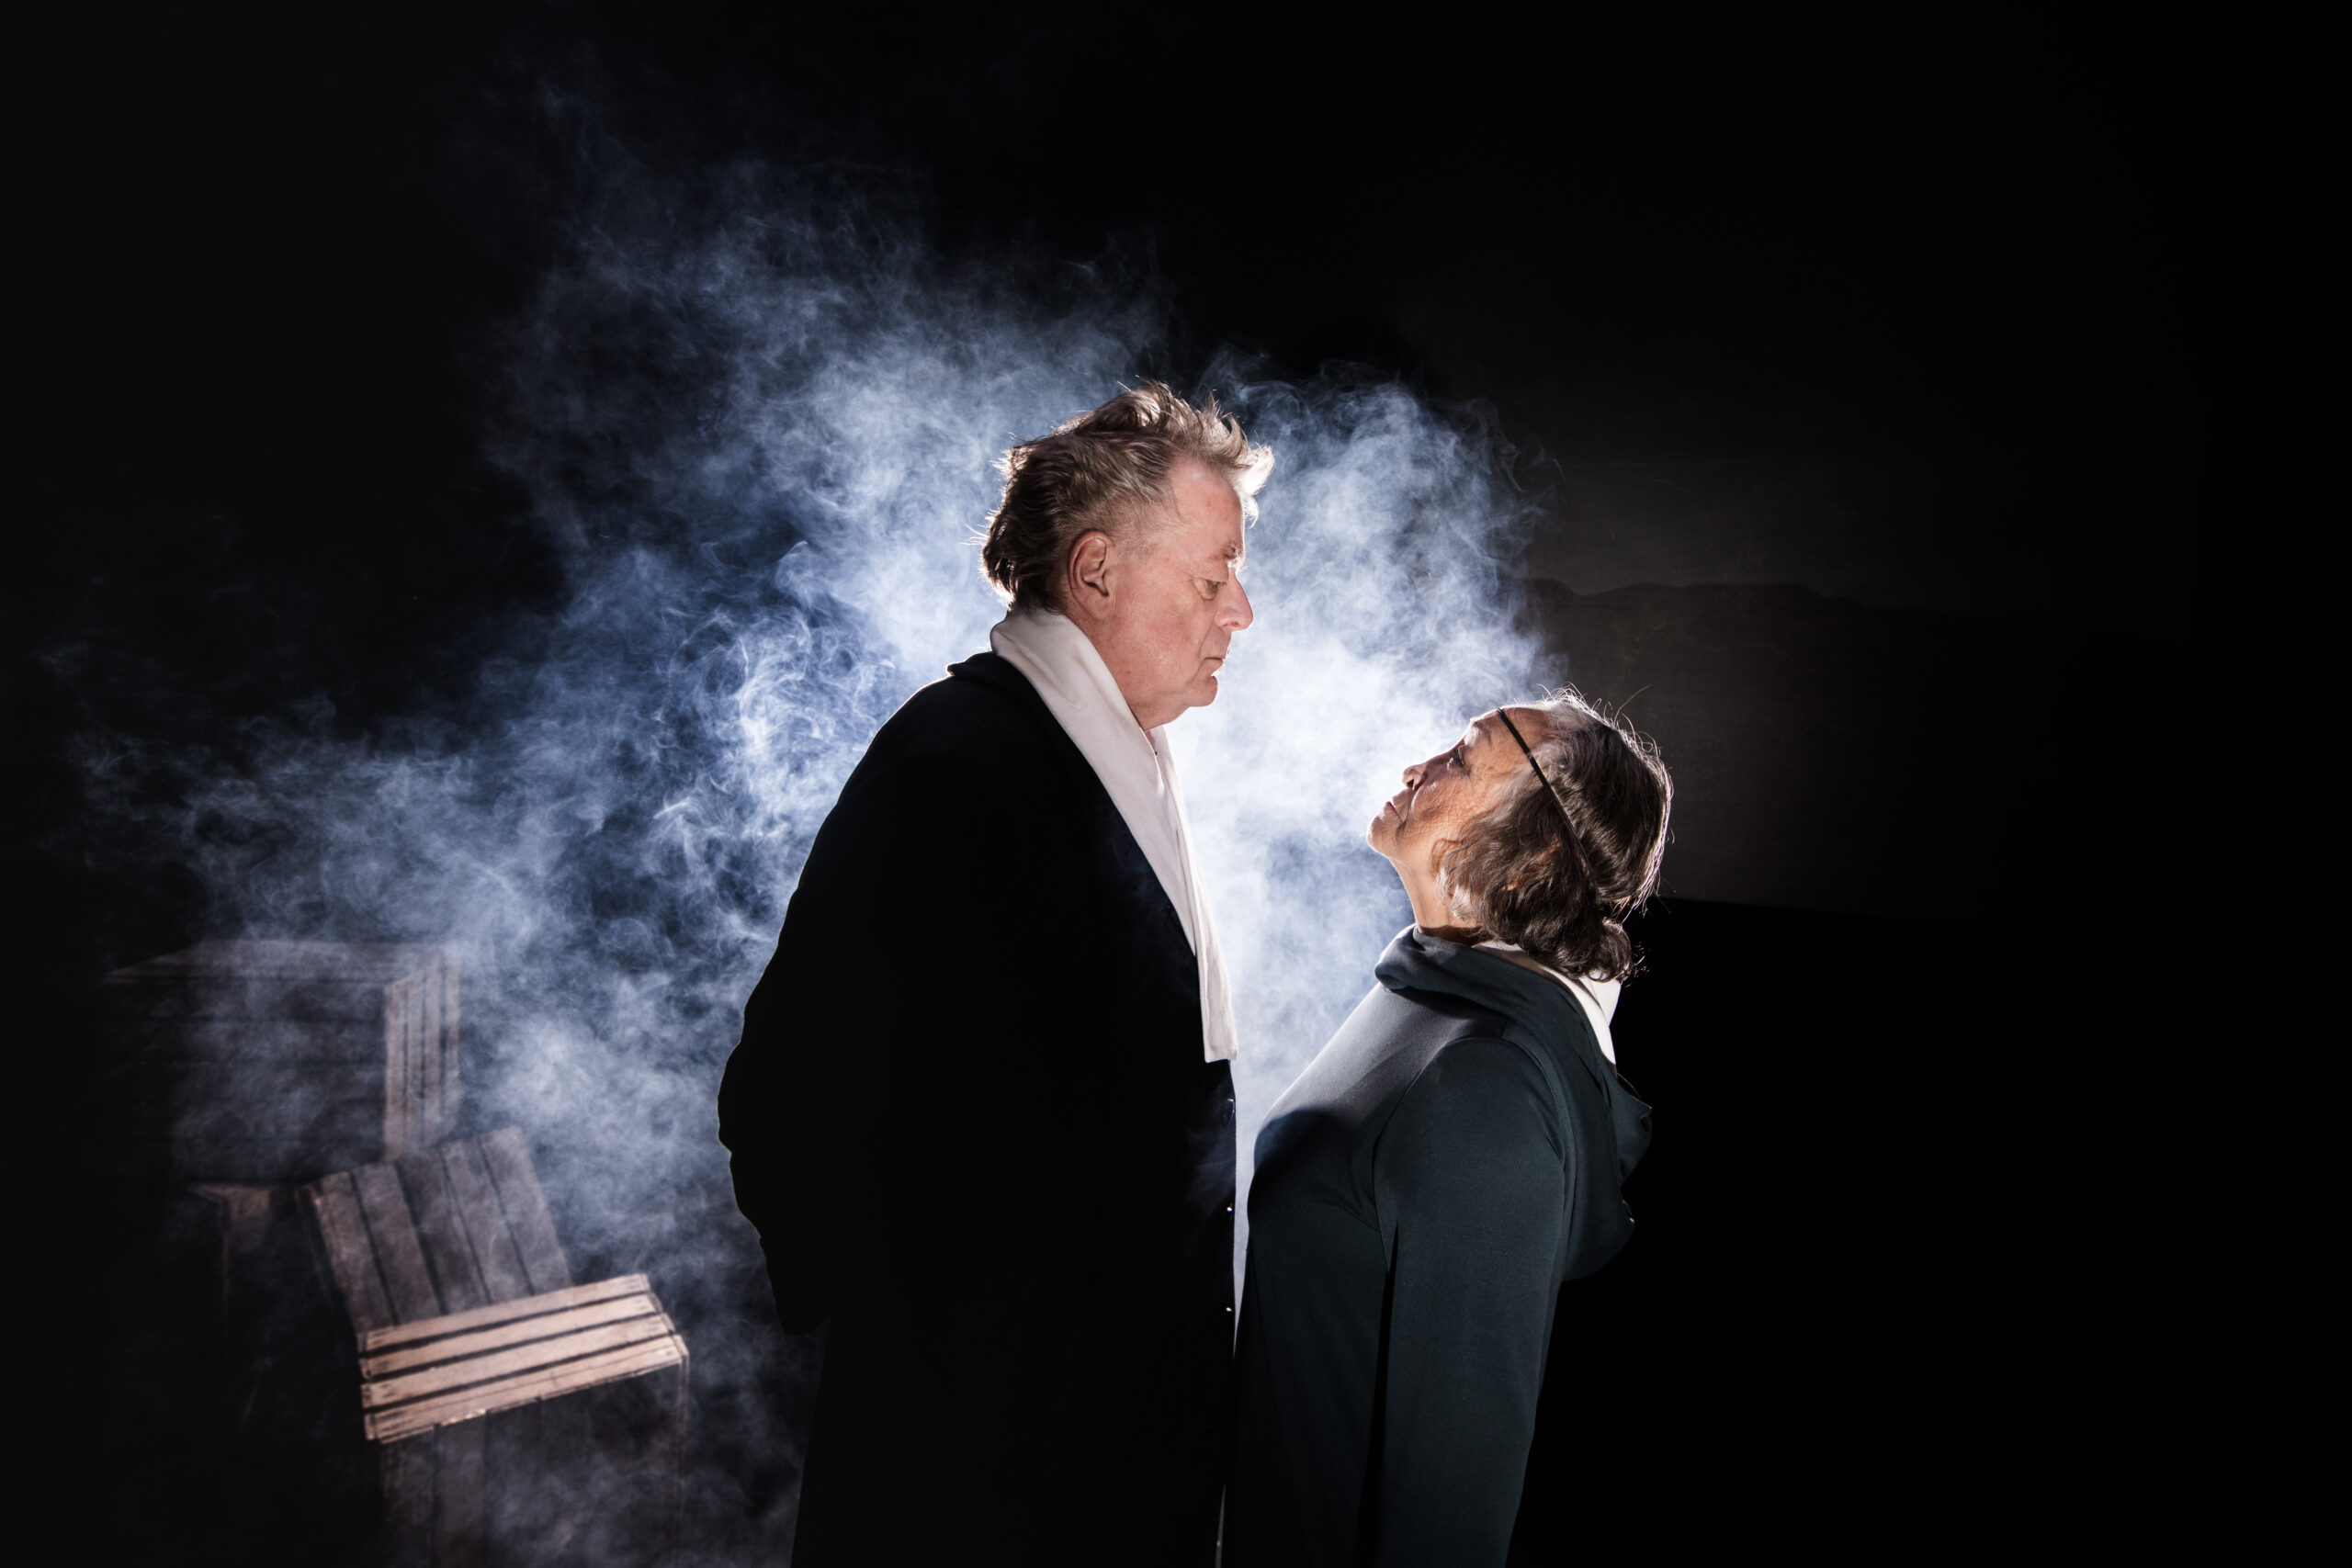 En mand og en kvinde står, og kigger op på hinanden med røg omkring dem.